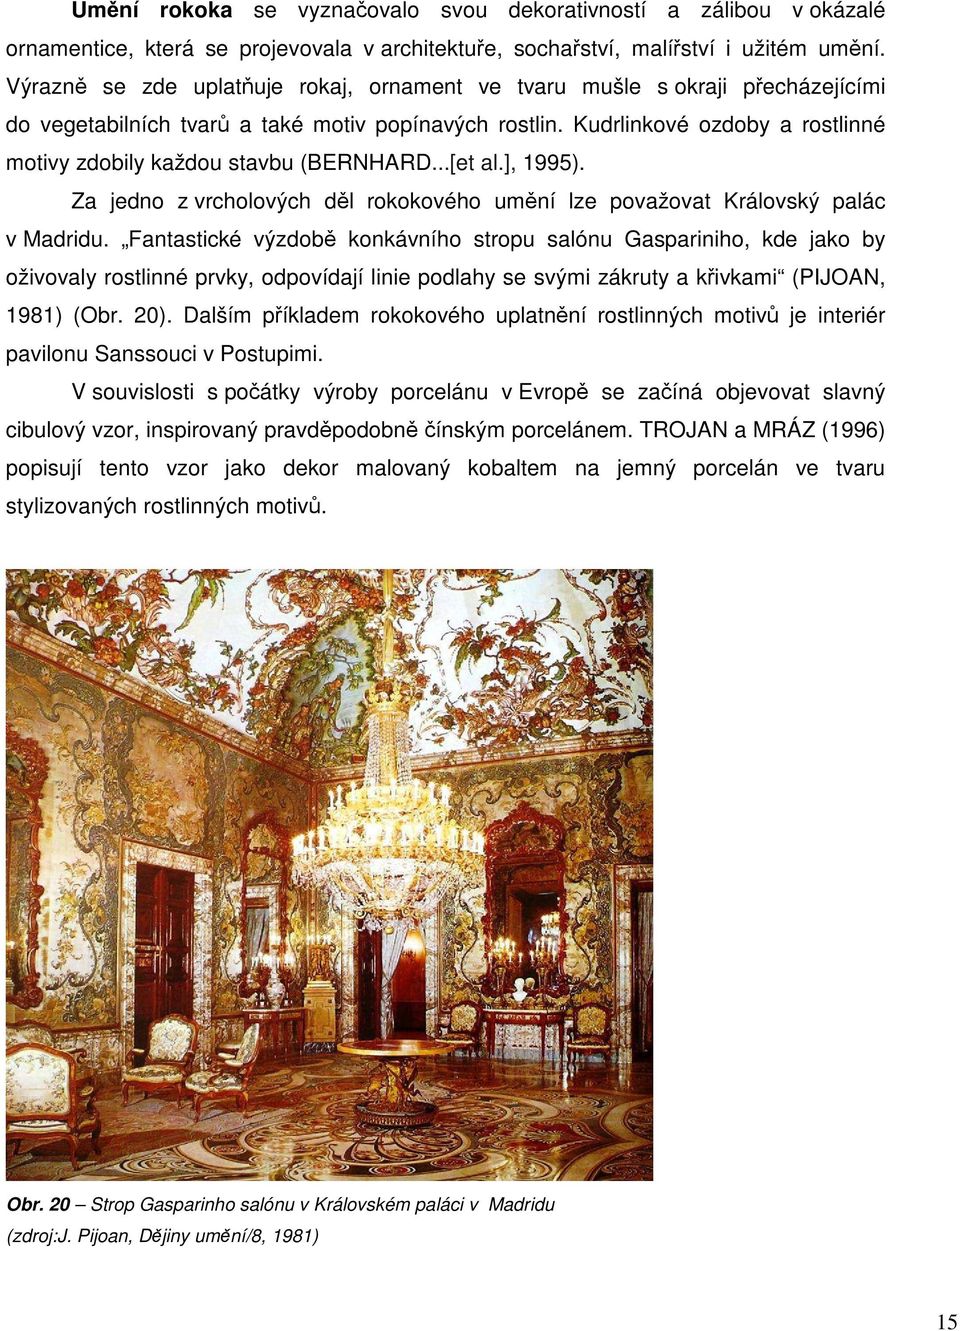 Kudrlinkové ozdoby a rostlinné motivy zdobily každou stavbu (BERNHARD...[et al.], 1995). Za jedno z vrcholových děl rokokového umění lze považovat Královský palác v Madridu.